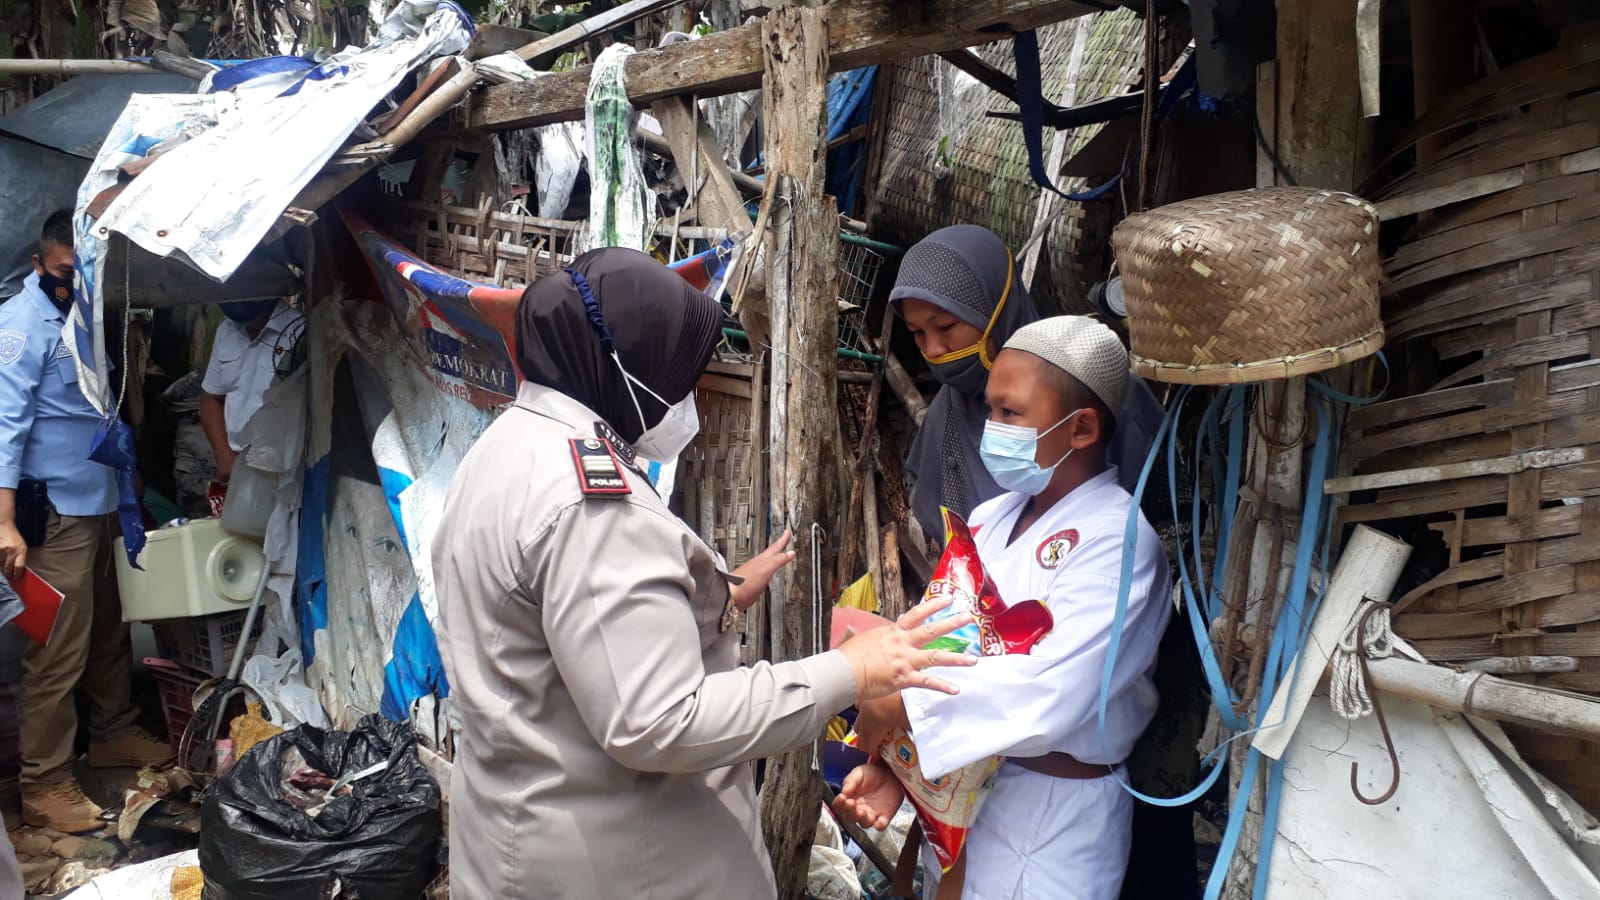 Anggota Polres Malang Sambangi Ipul Beri Bantuan dan Janji Bedah Rumah